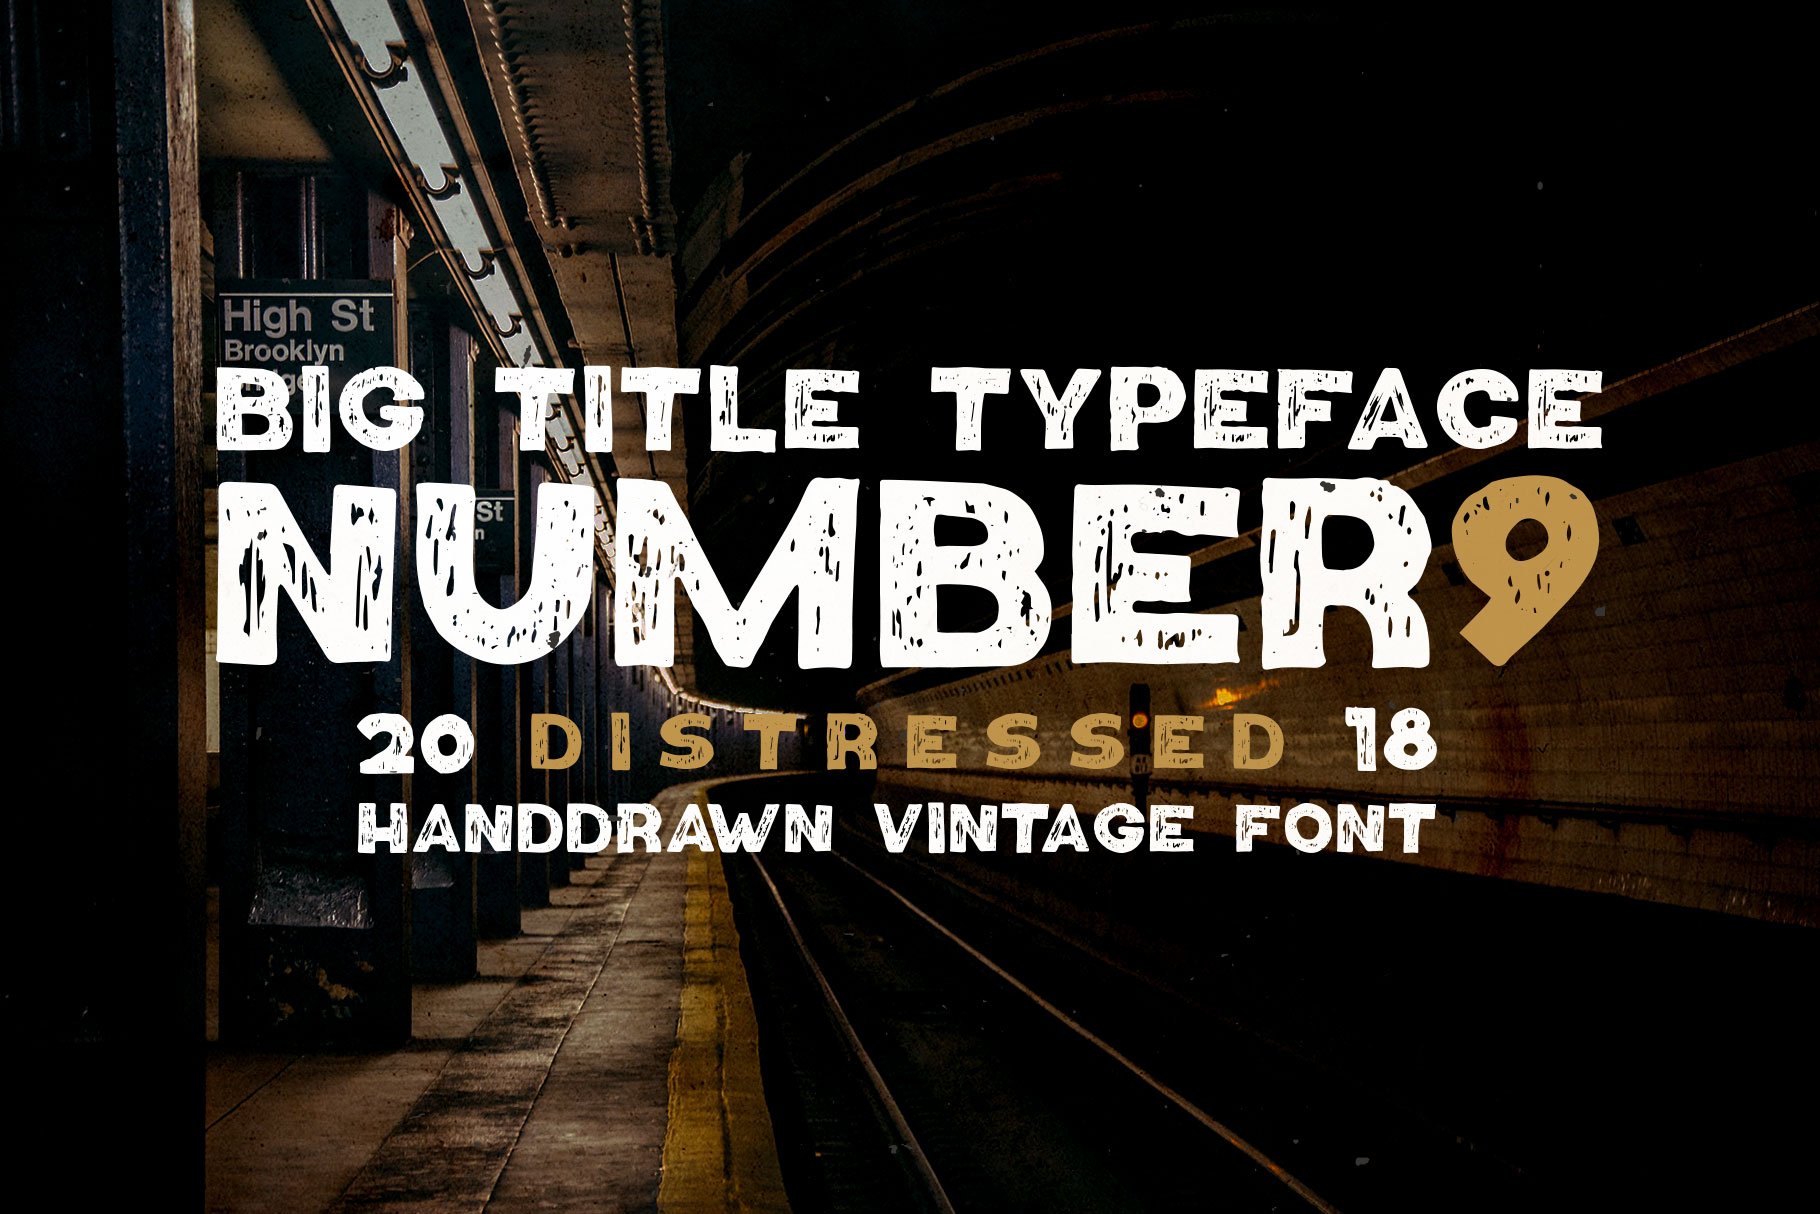 Number9 - Handdrawn Vintage Font cover image.